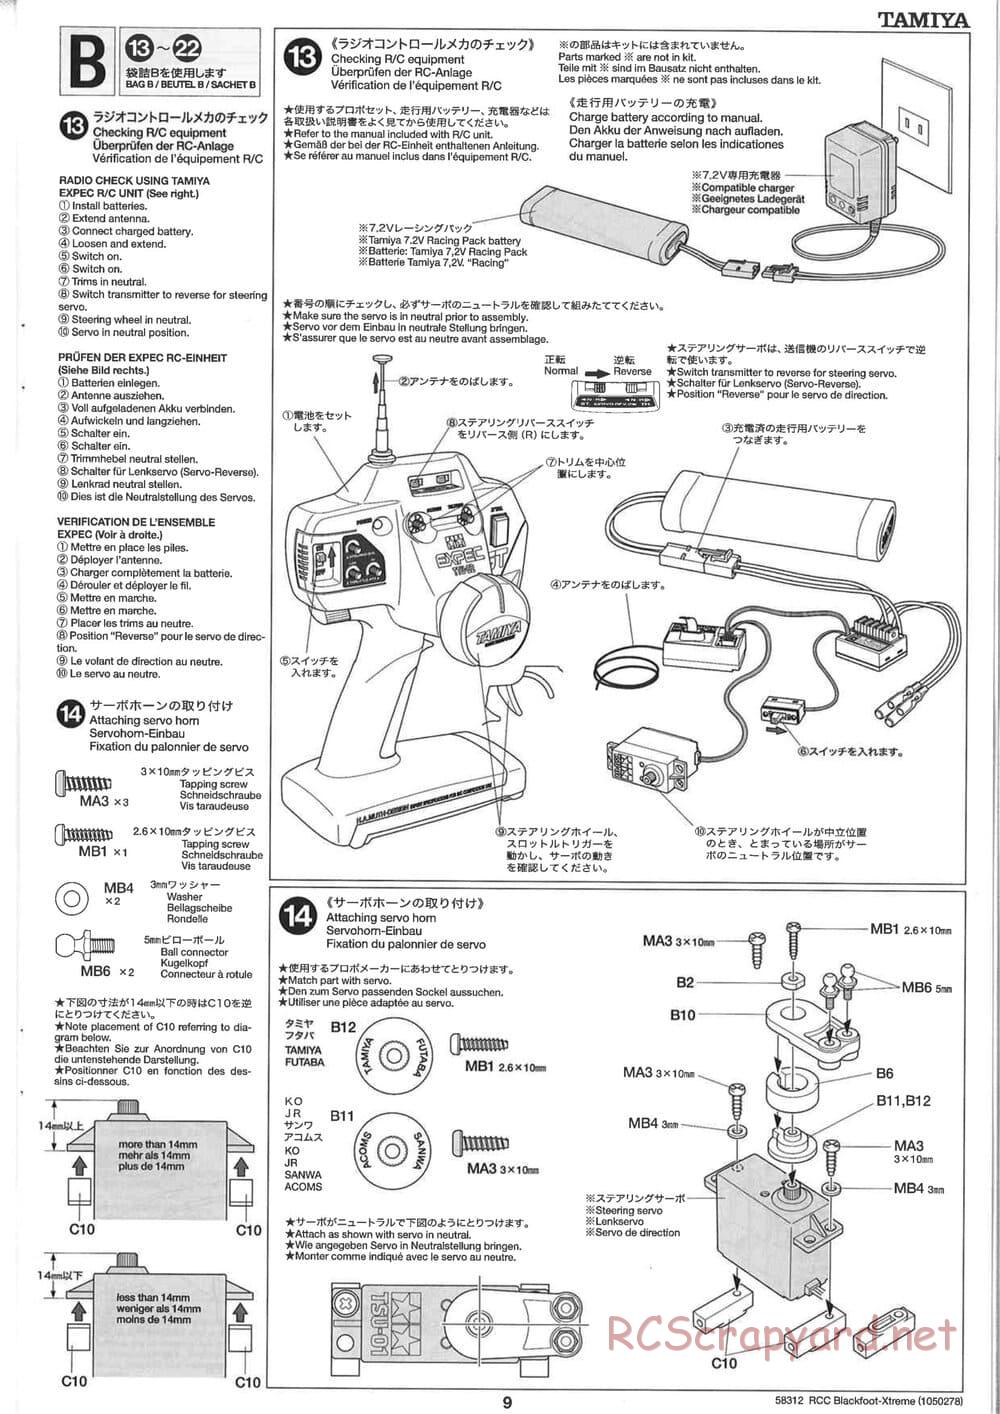 Tamiya - Blackfoot Xtreme - WT-01 Chassis - Manual - Page 9